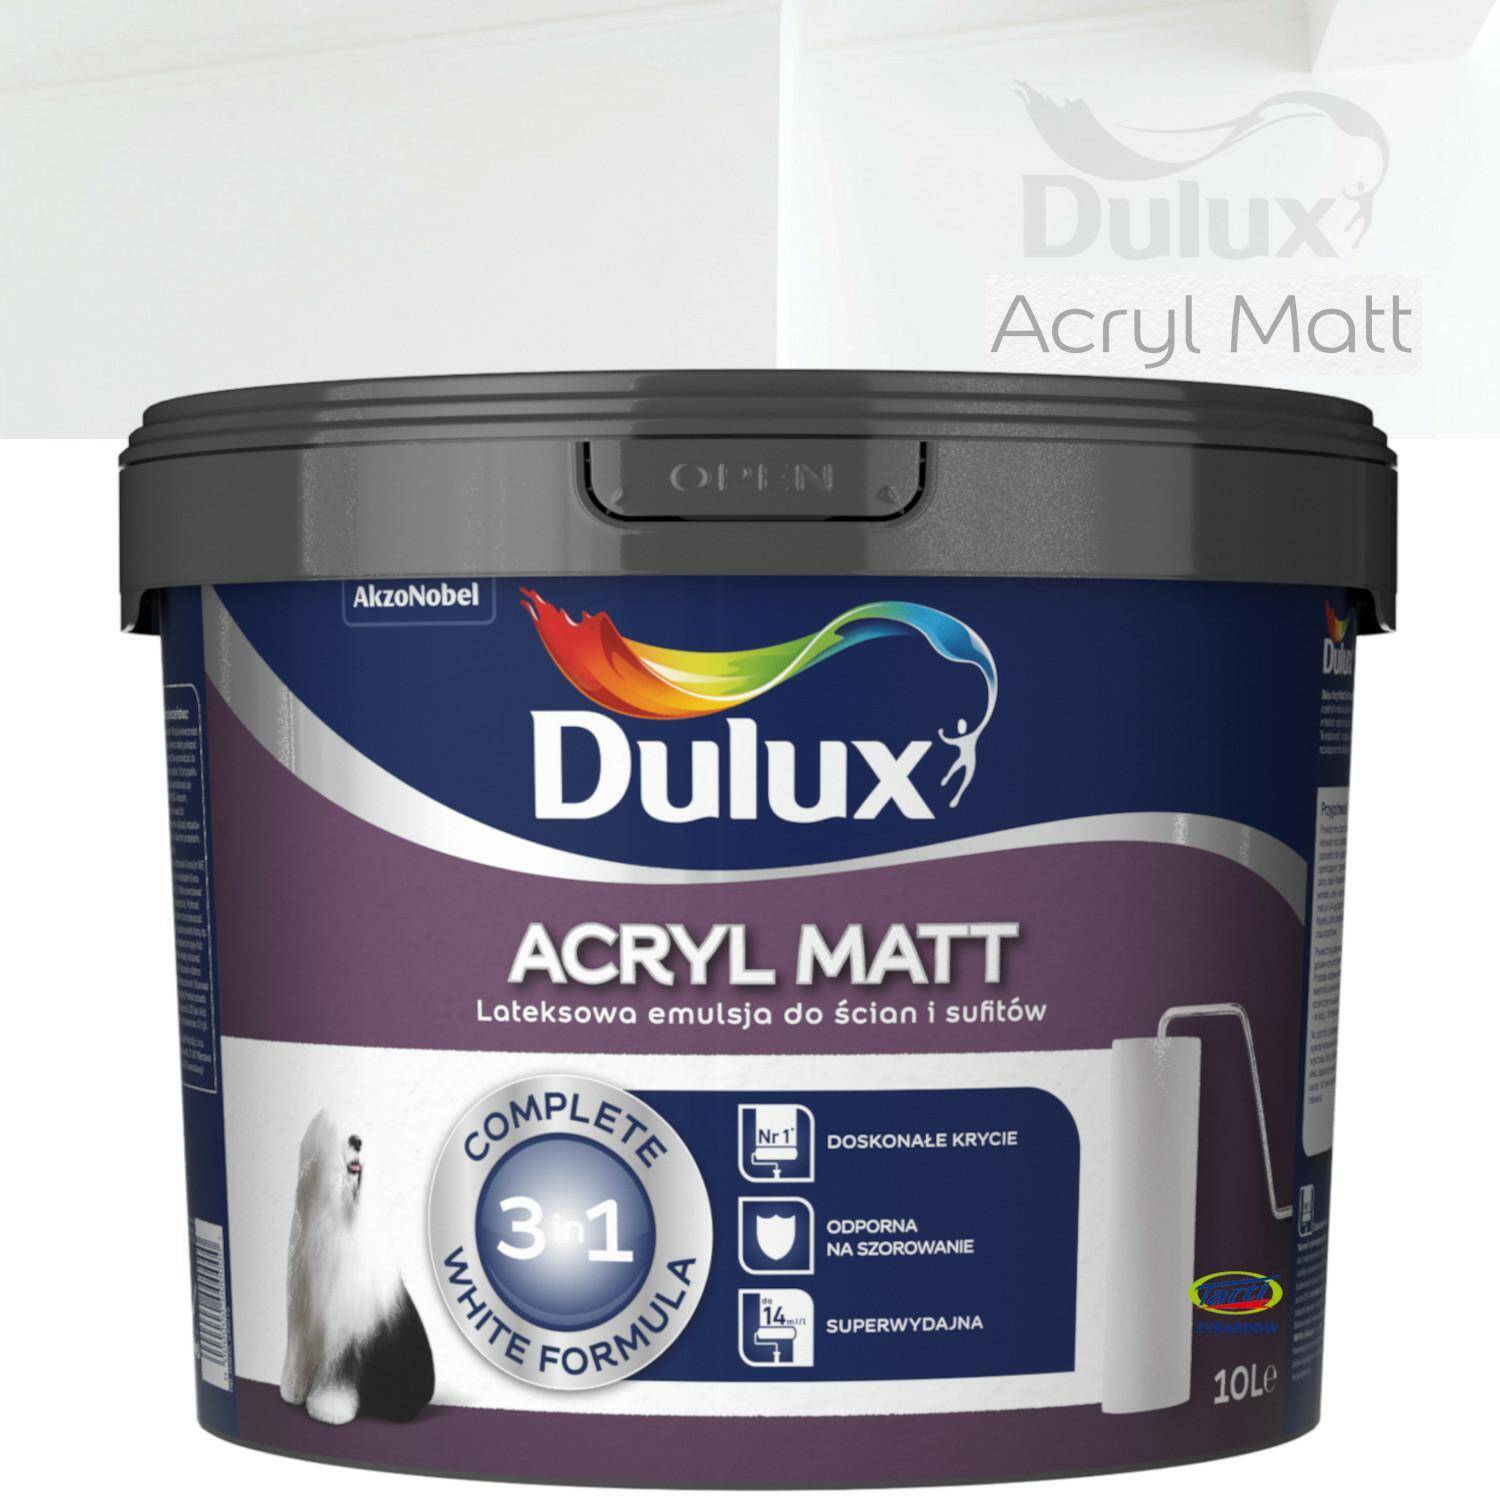 Dulux Acryl Matt Emulsja do ścian i sufitów biała 10l (Zdjęcie 7)